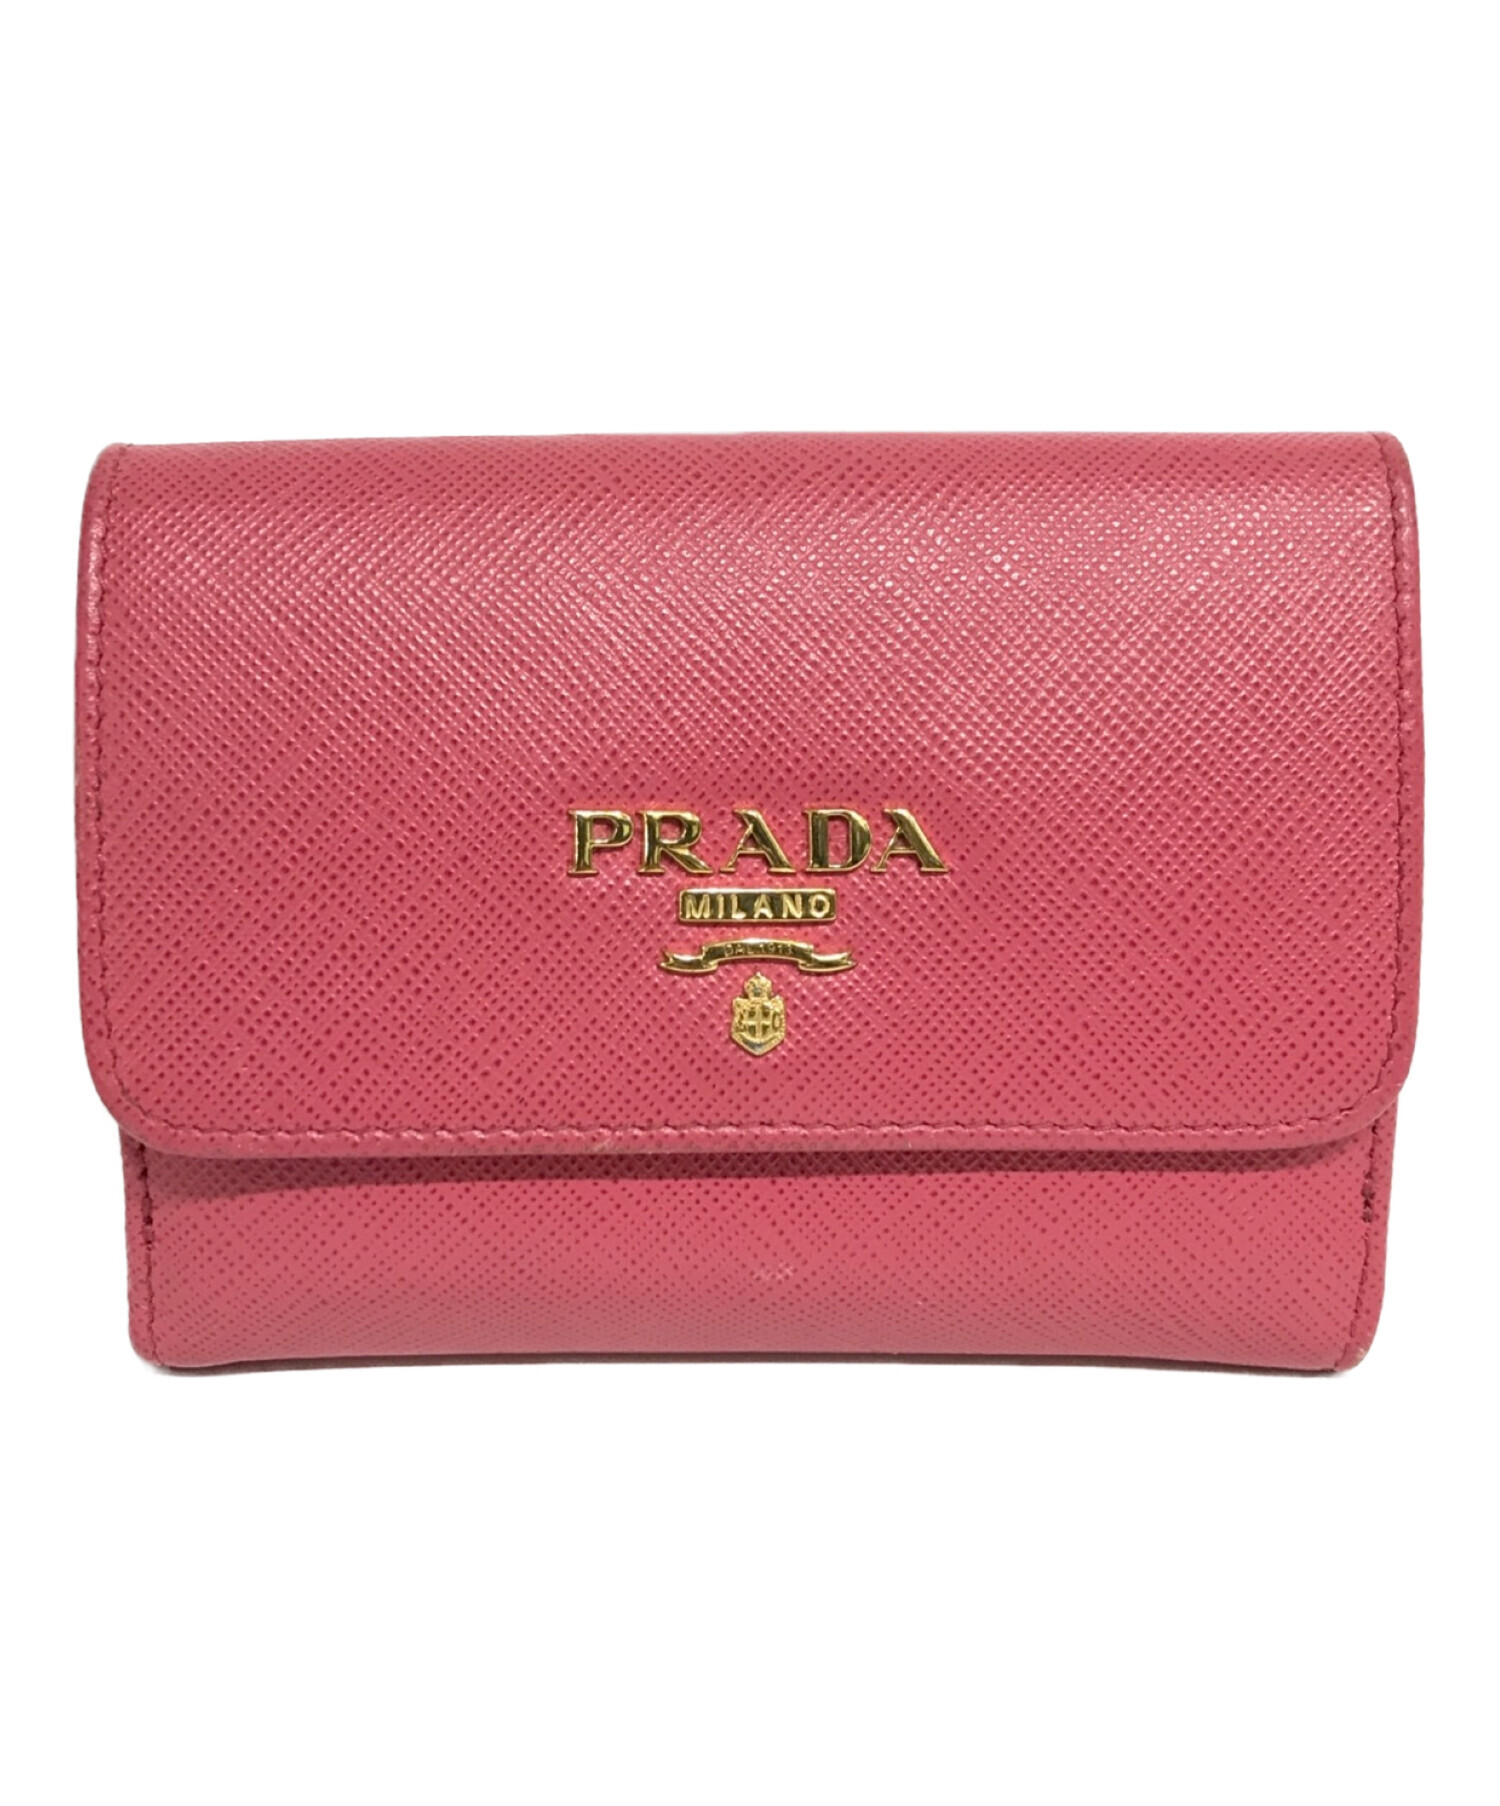 プラダ ピンク 財布 - 小物